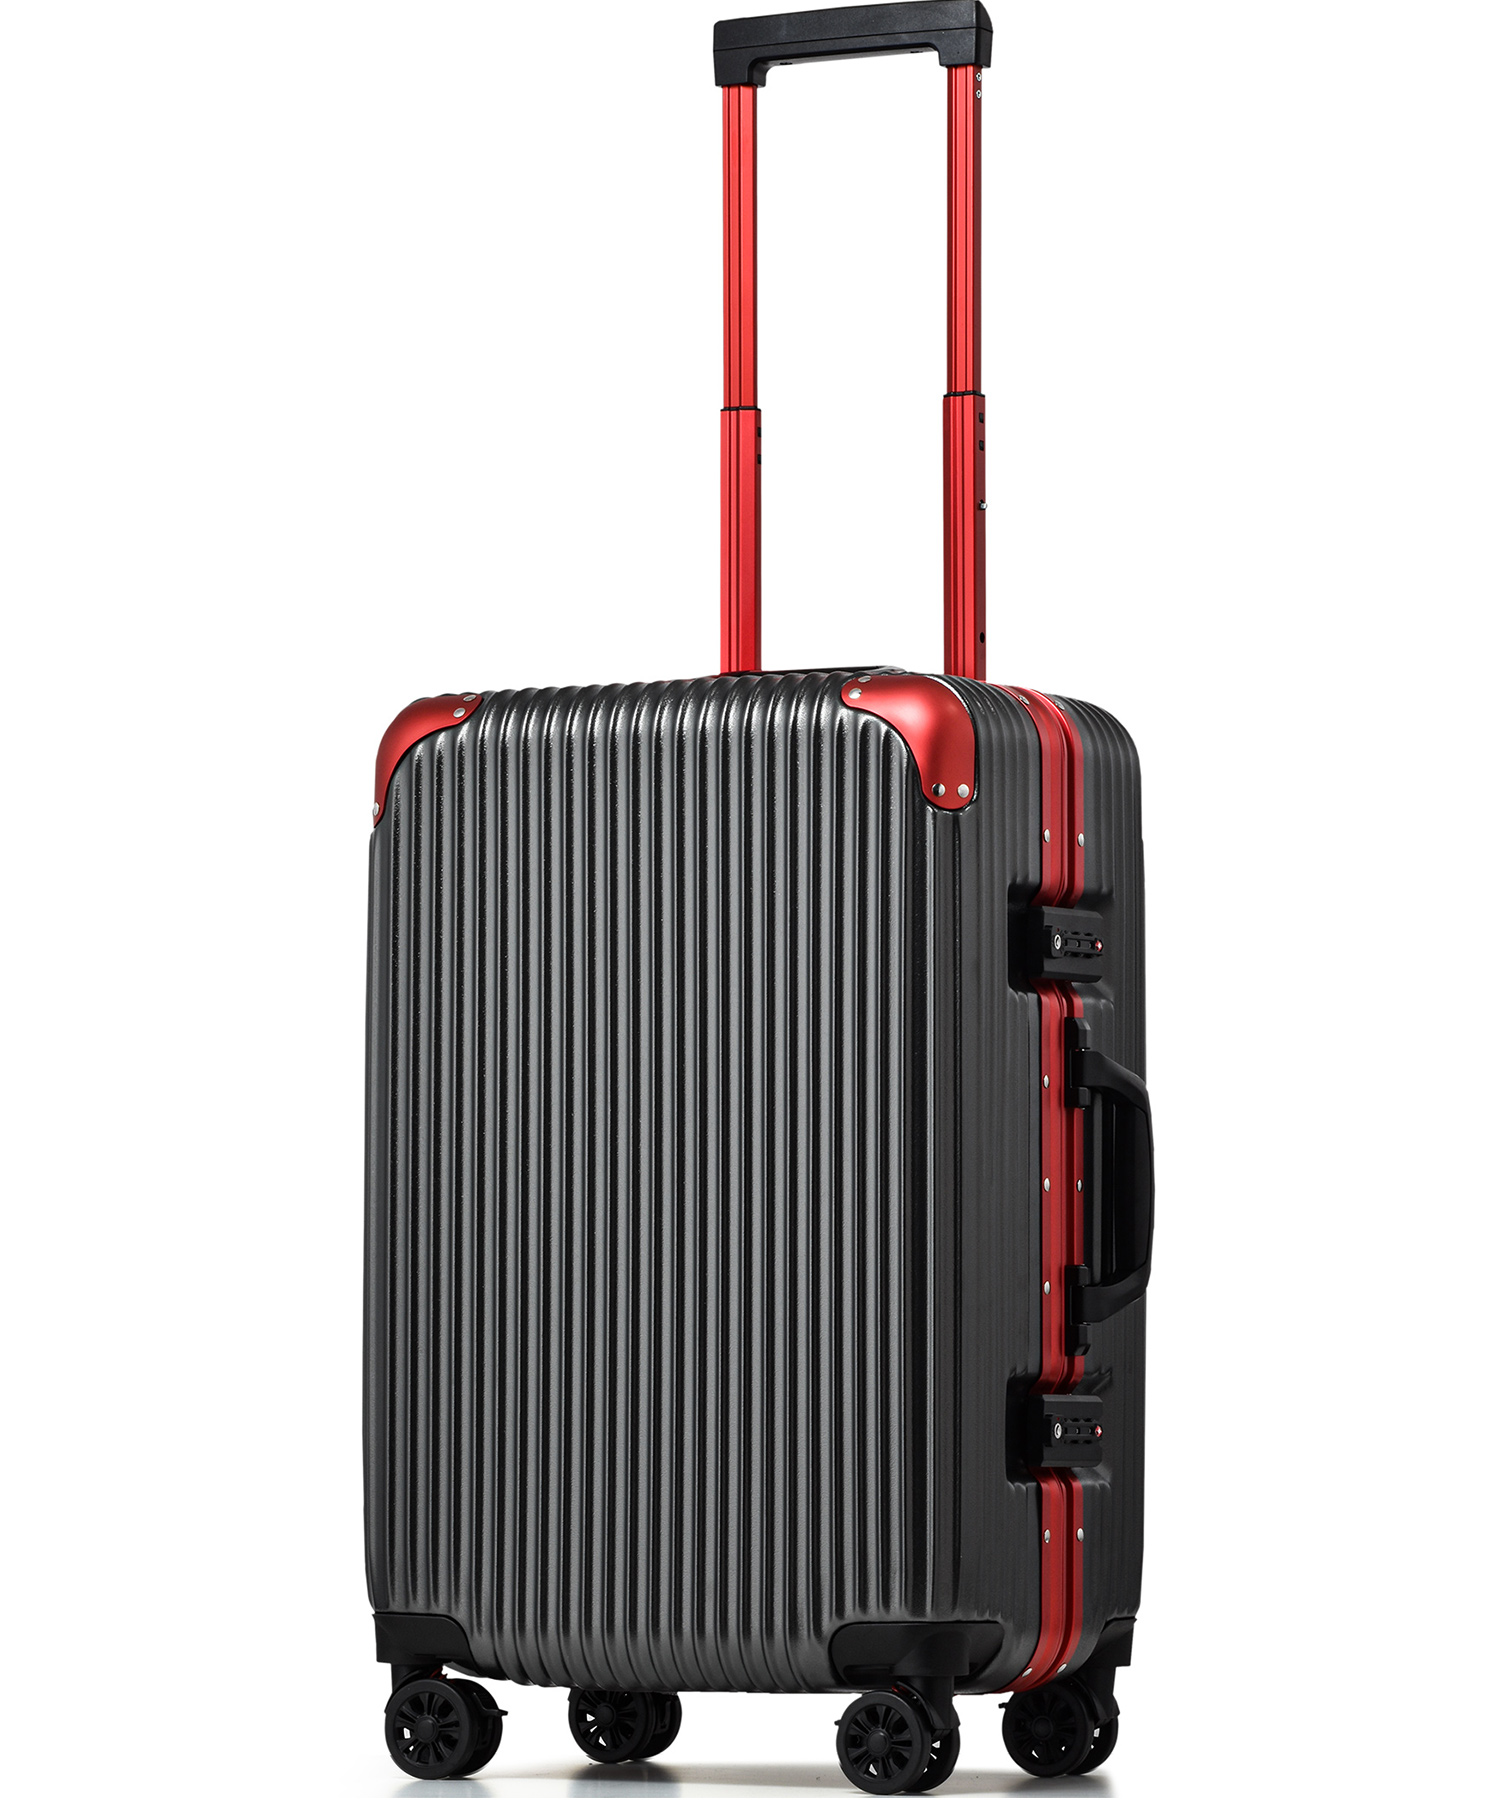 PROEVO／プロエボ] スーツケース 軽量 アルミフレーム TSAロック - バッグ